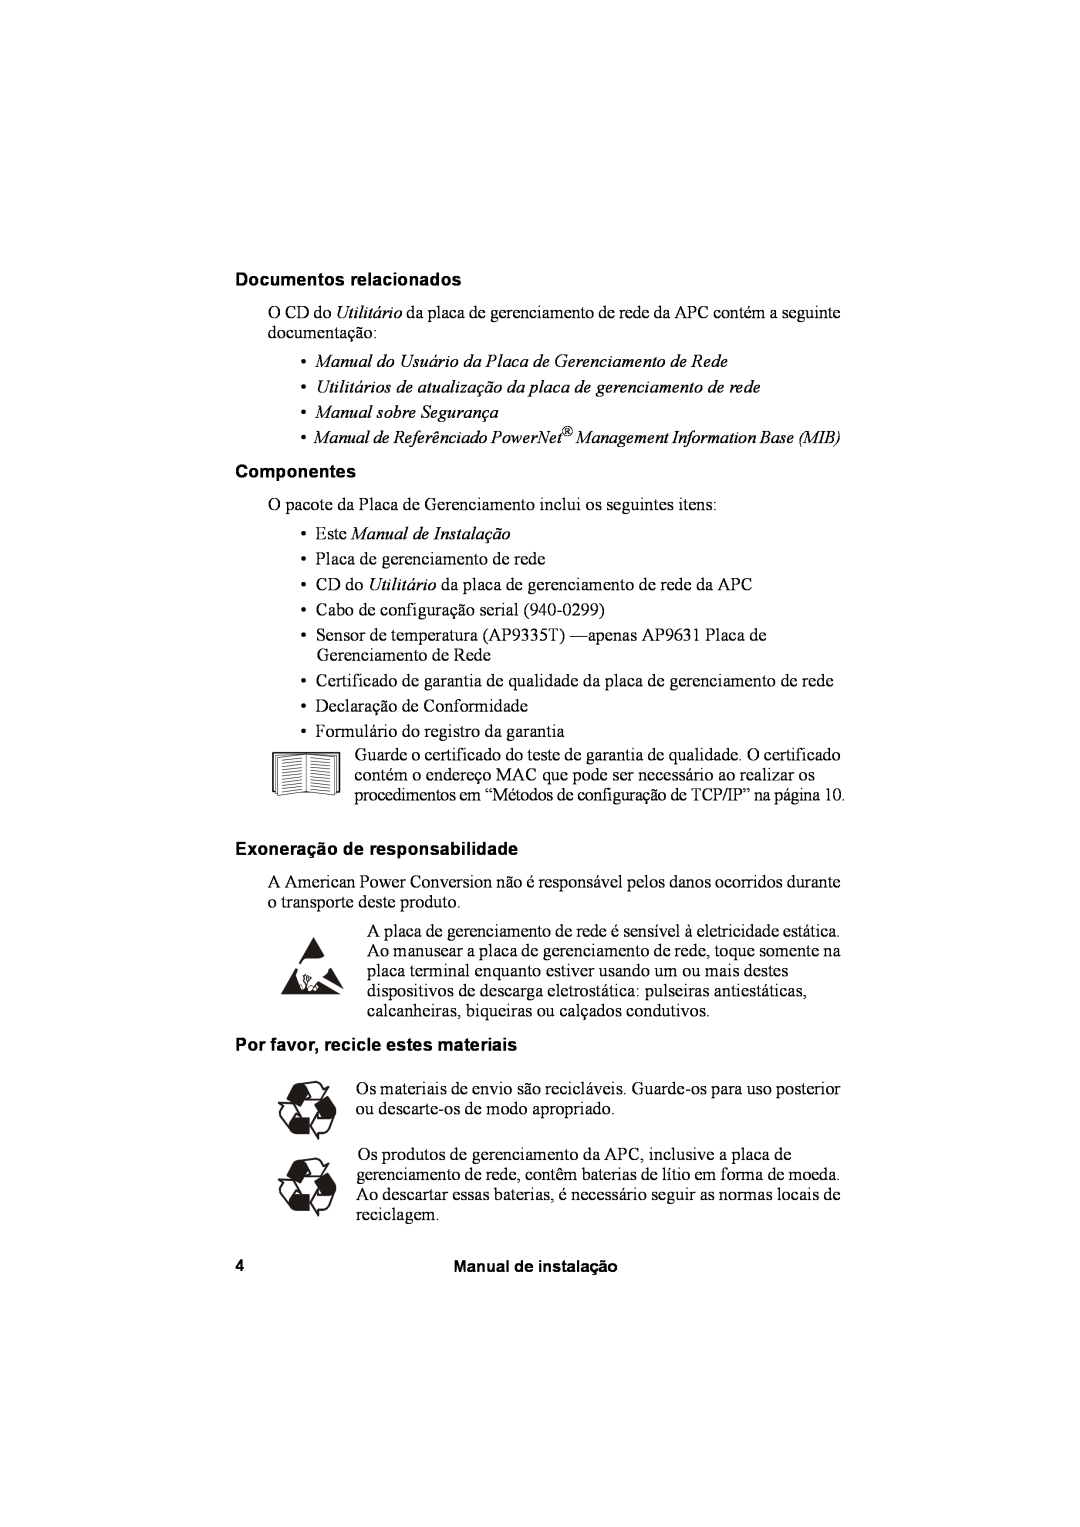 APC AP9631, AP9630 Documentos relacionados, Manual do Usuário da Placa de Gerenciamento de Rede, Manual sobre Segurança 